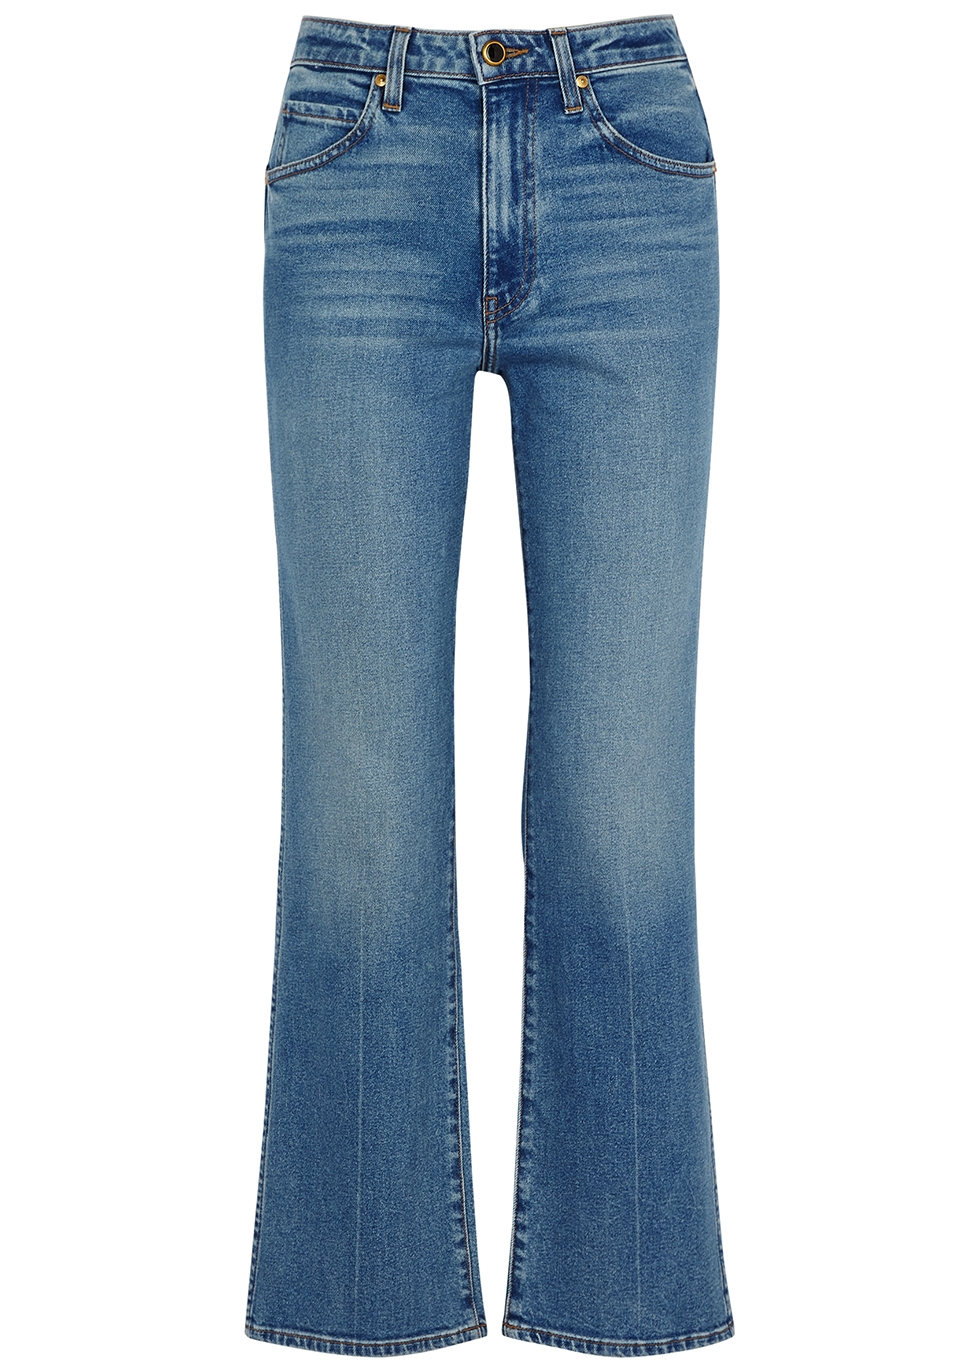 Khaite Vivian blue bootcut jeans - Harvey Nichols